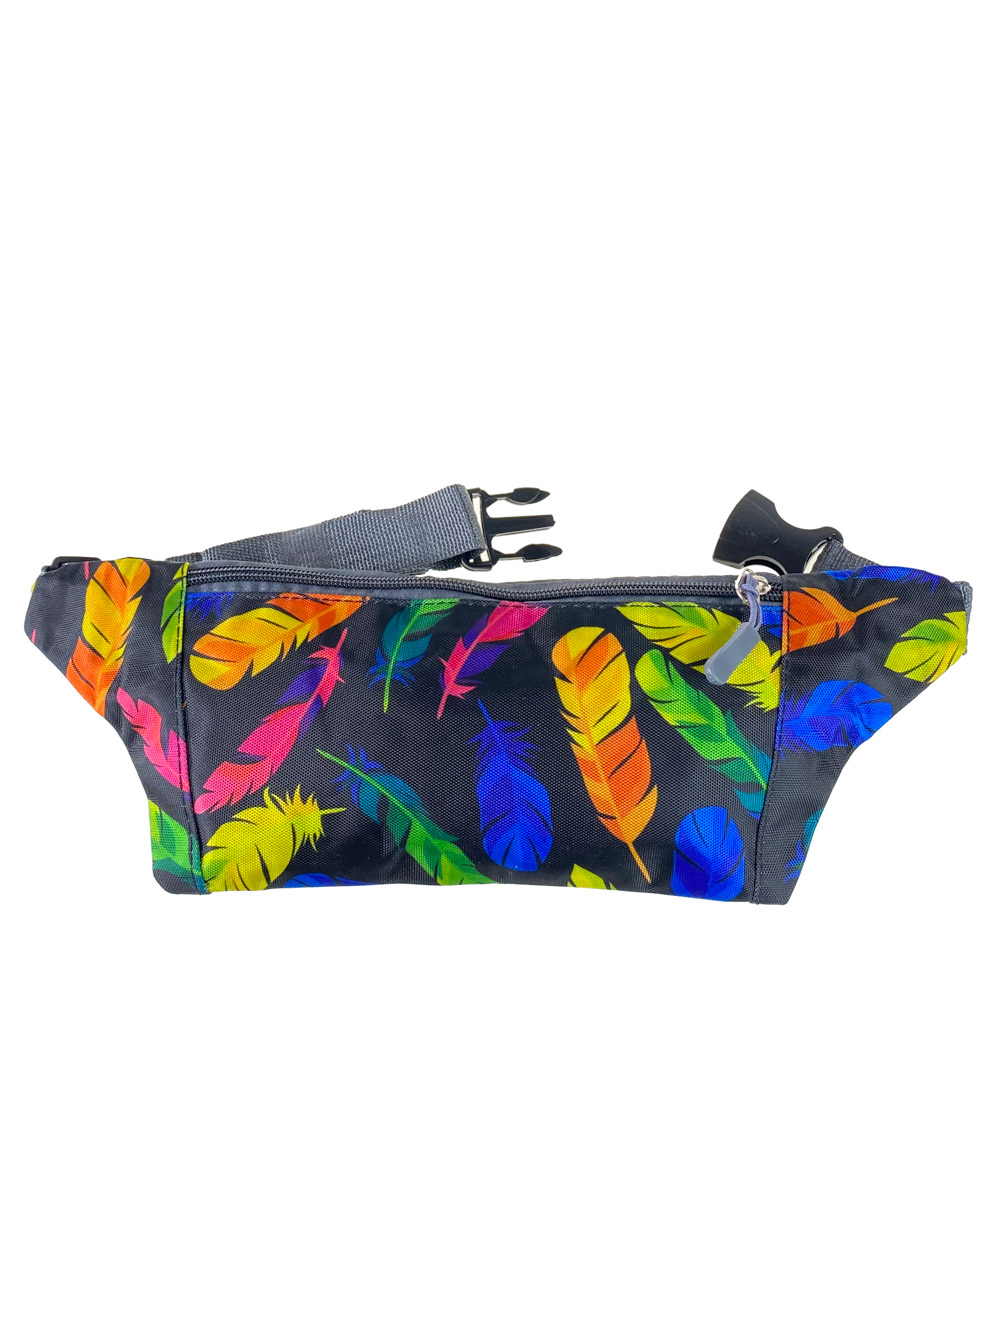 Спортивная поясная сумка из текстиля с разноцветным принтом, цвет мульти